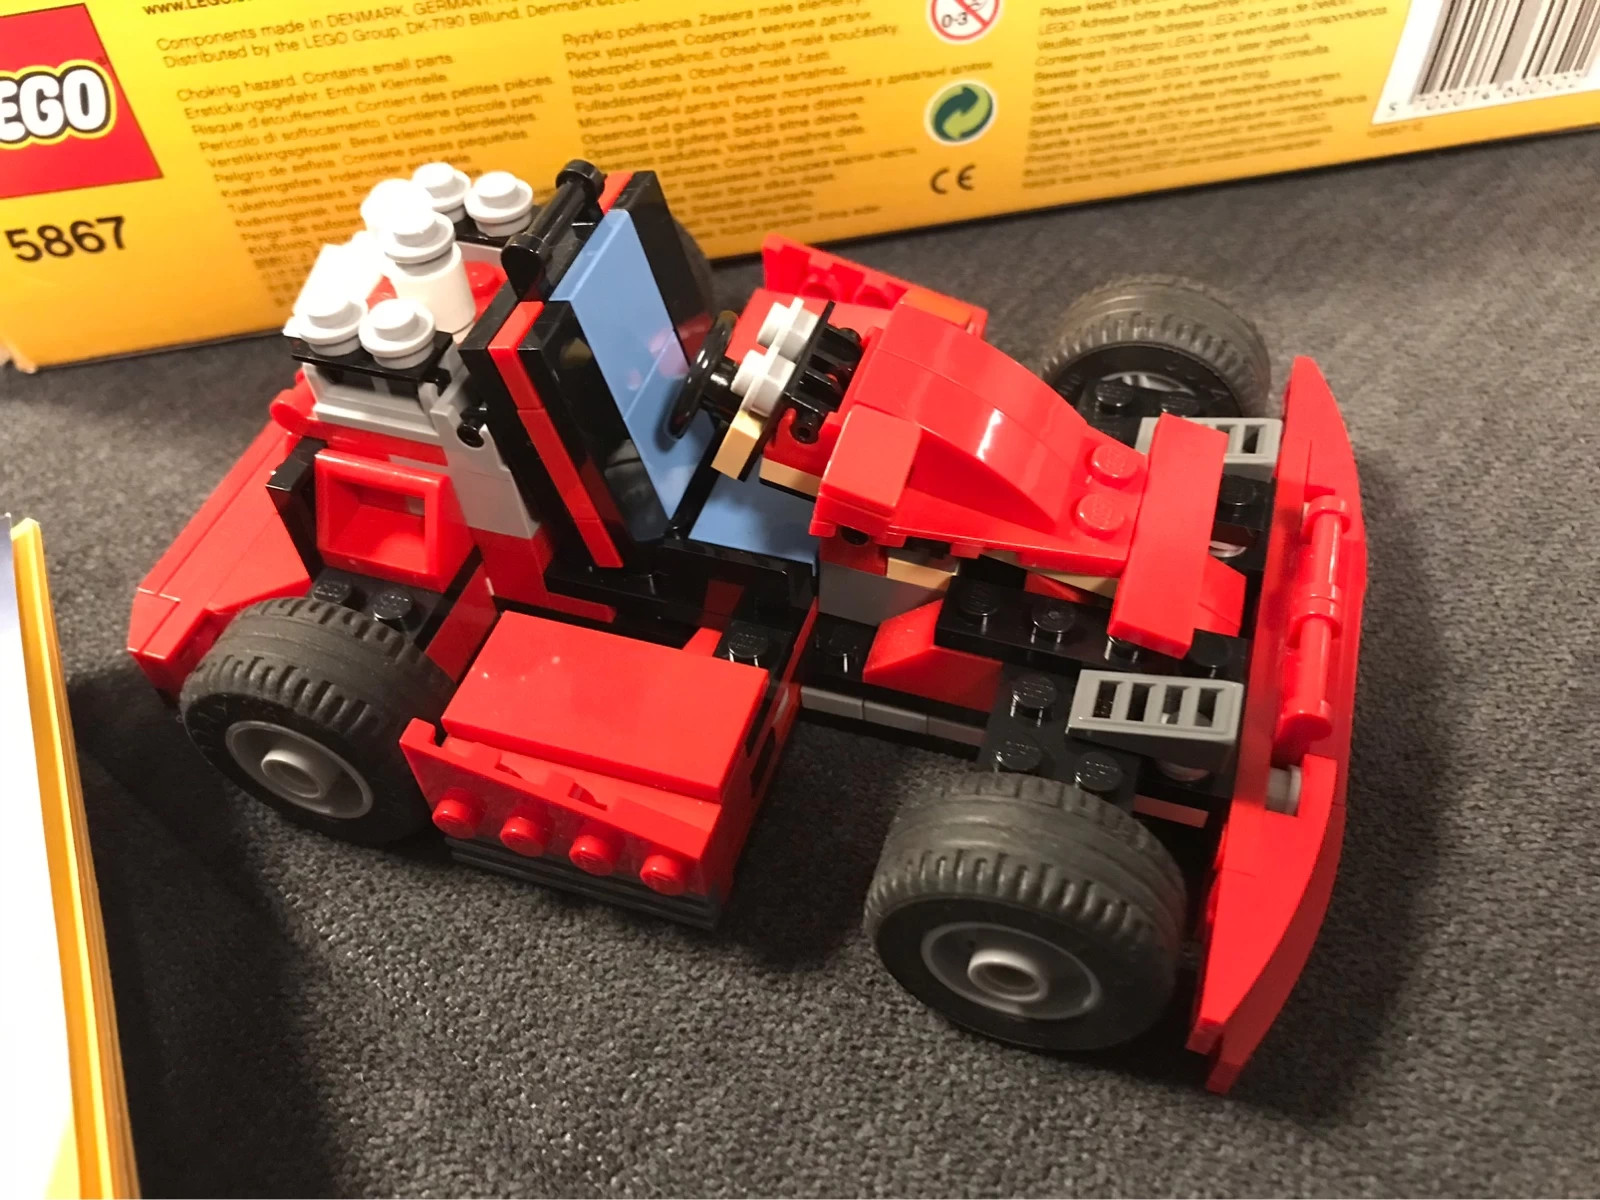 LEGO Coche rojo creador (5867)